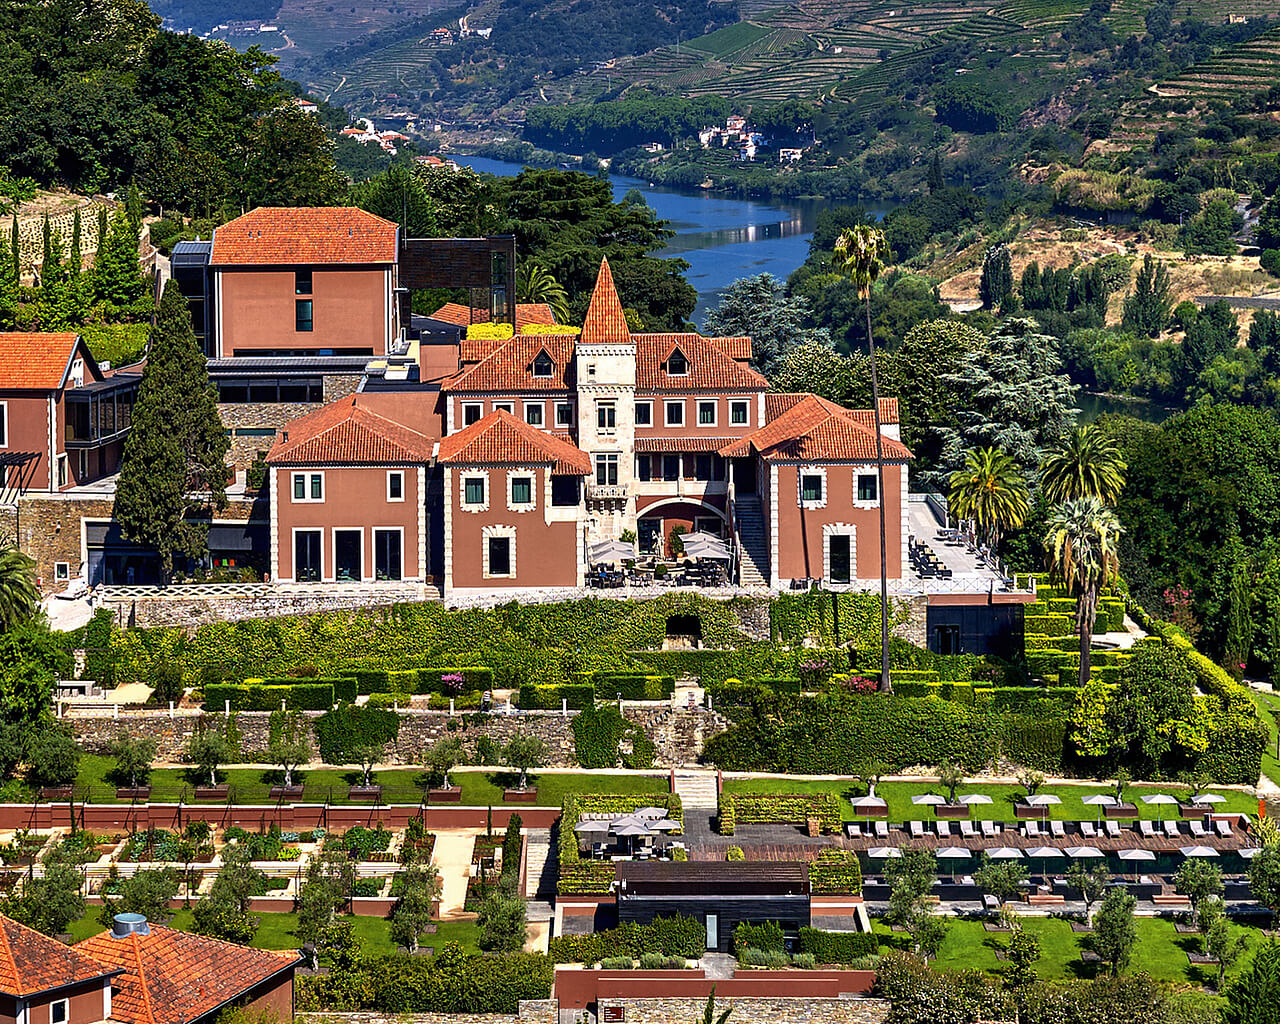 Vacances à l'hôtel Six Senses, Douro, Portugal